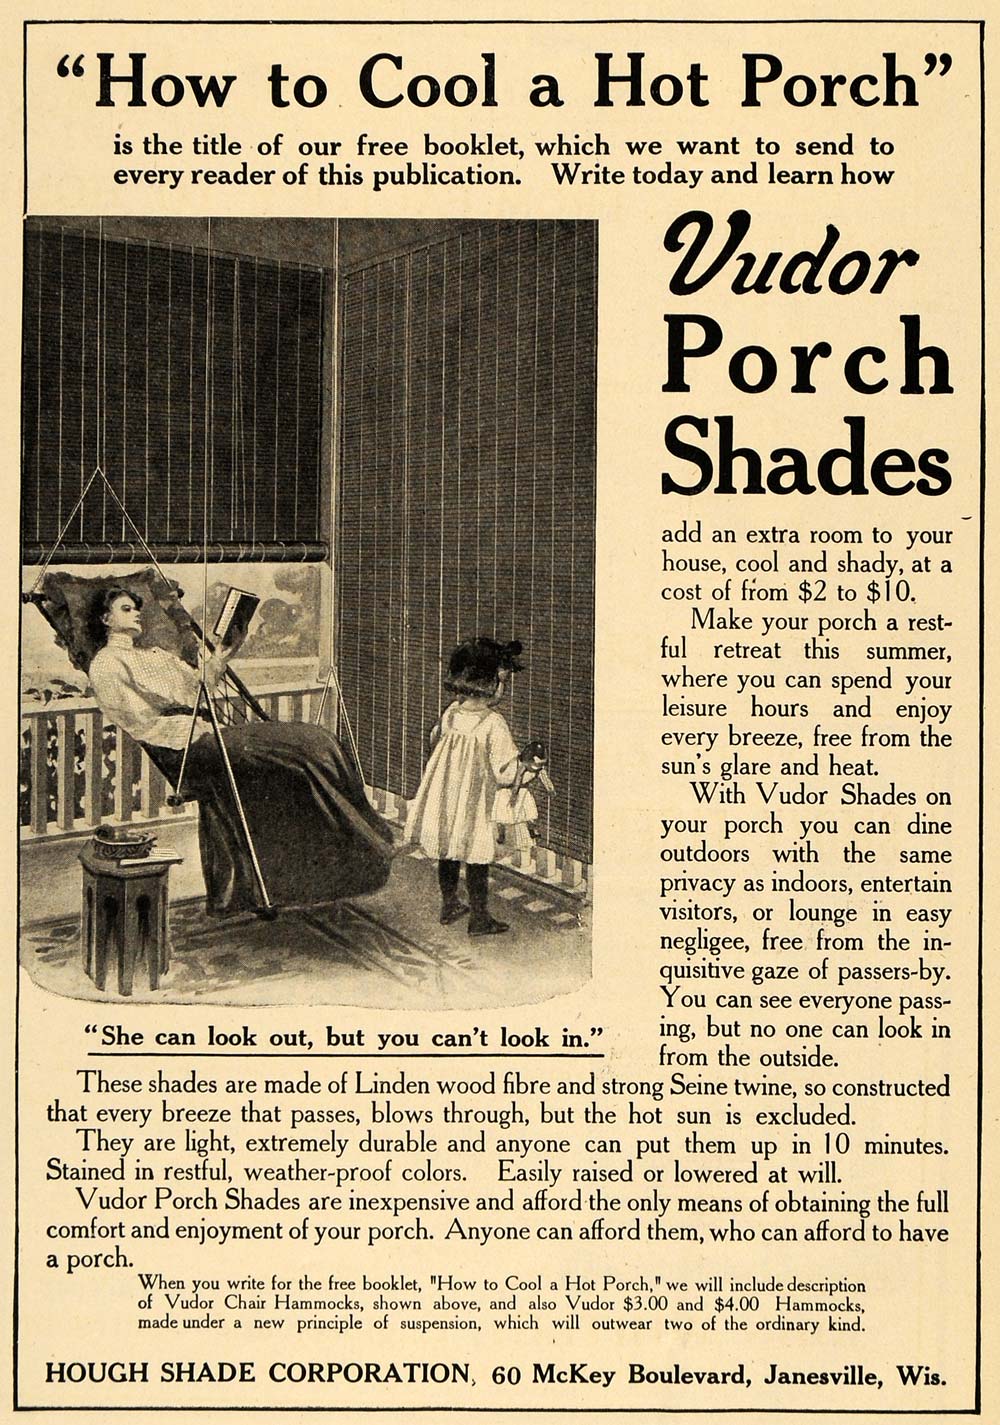 1906 Ad Hough Shade Co. Vudor Porch Shades Home Decor - ORIGINAL TOM2